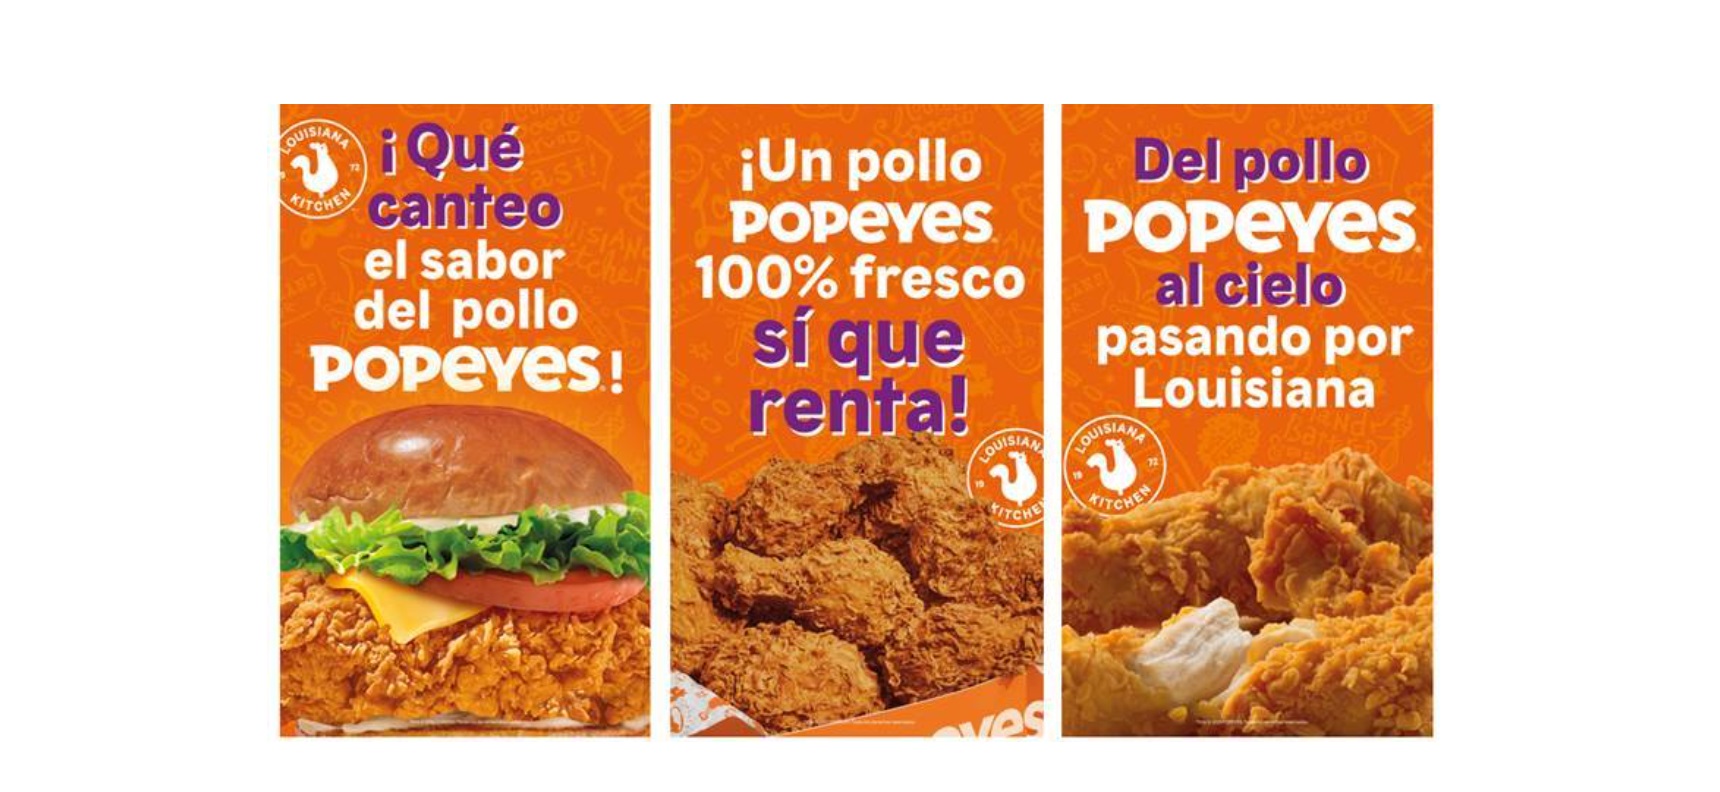 Popeyes, Restaurant Brands Iberia, campaña ,Muy de Madrid,, Yslandia ,programapublicidad